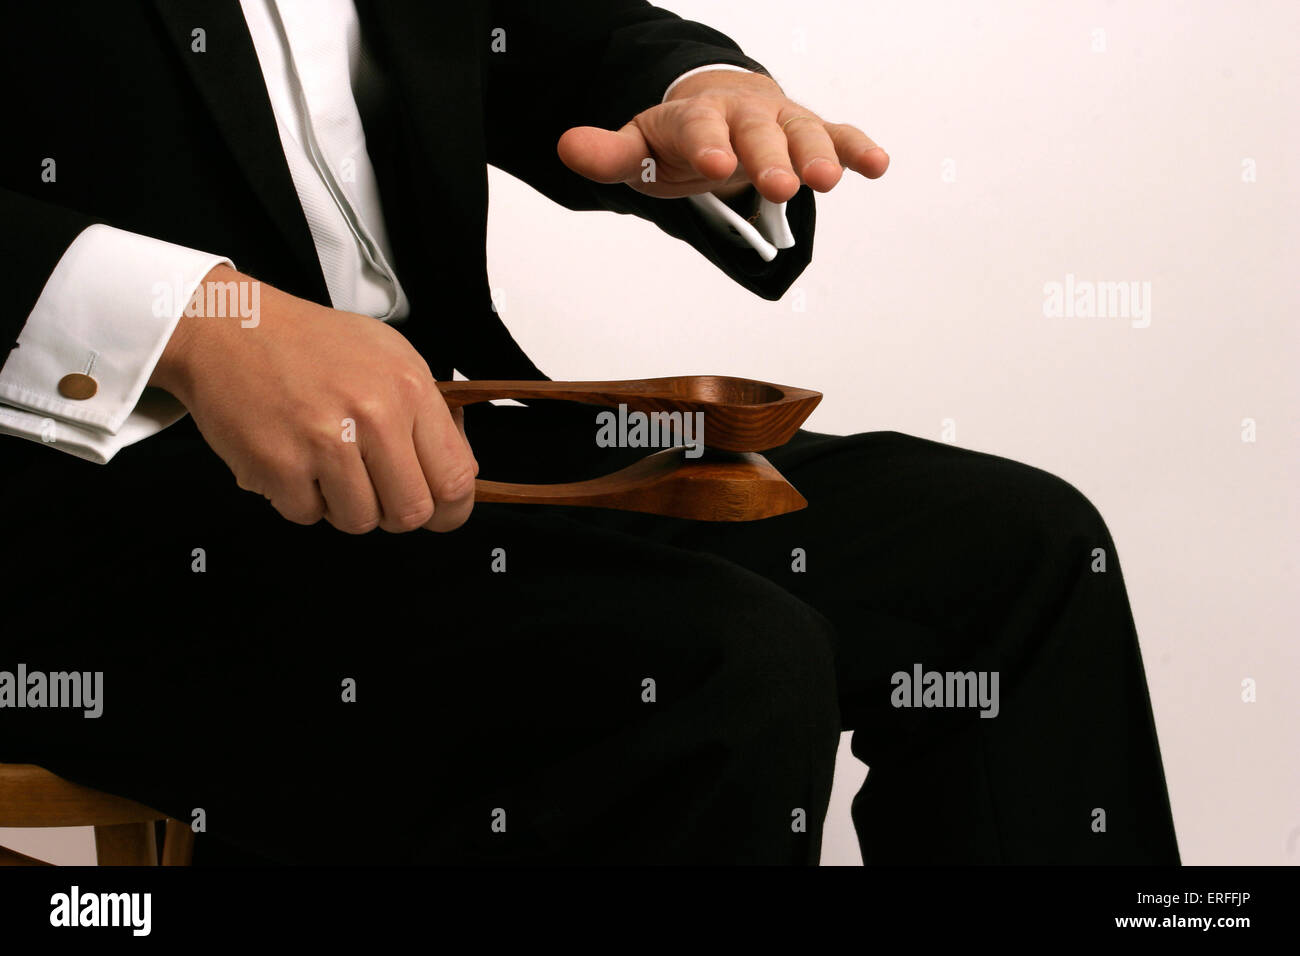 Percussion-Instrument Löffel wird gespielt - irische Stockfotografie - Alamy